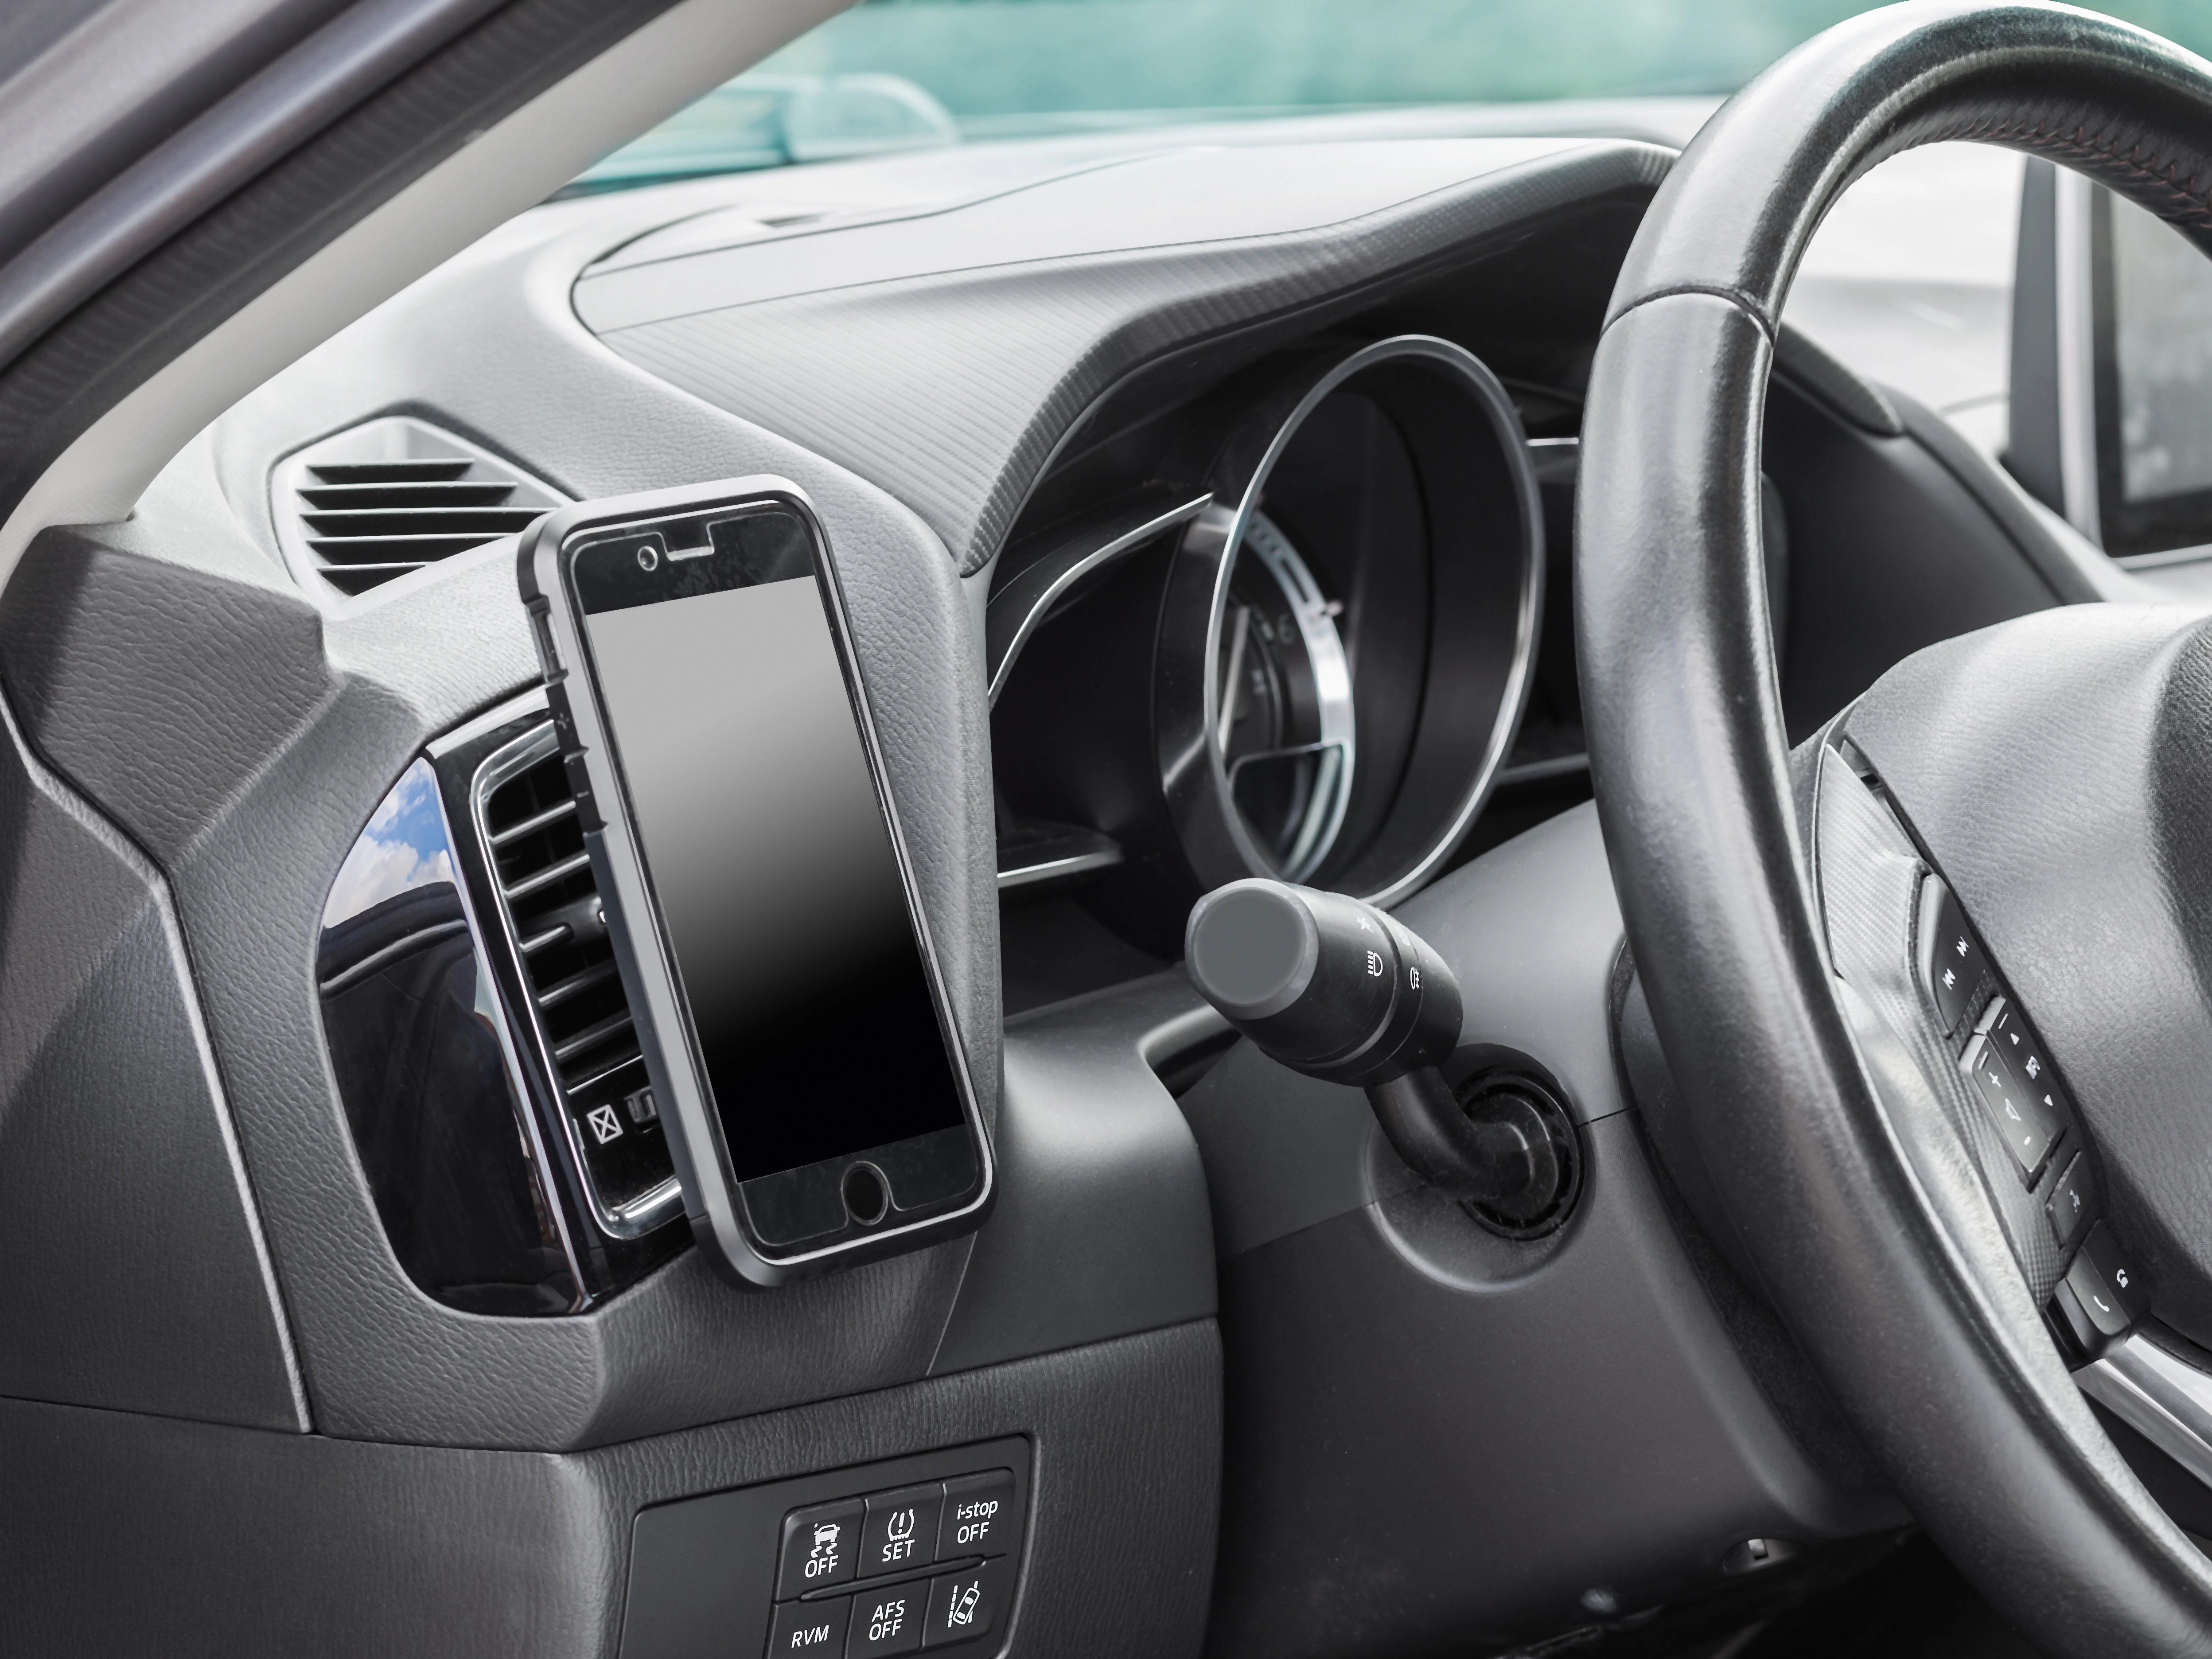 OBI Magnet-Smartphone-Halter für's Auto kaufen bei OBI